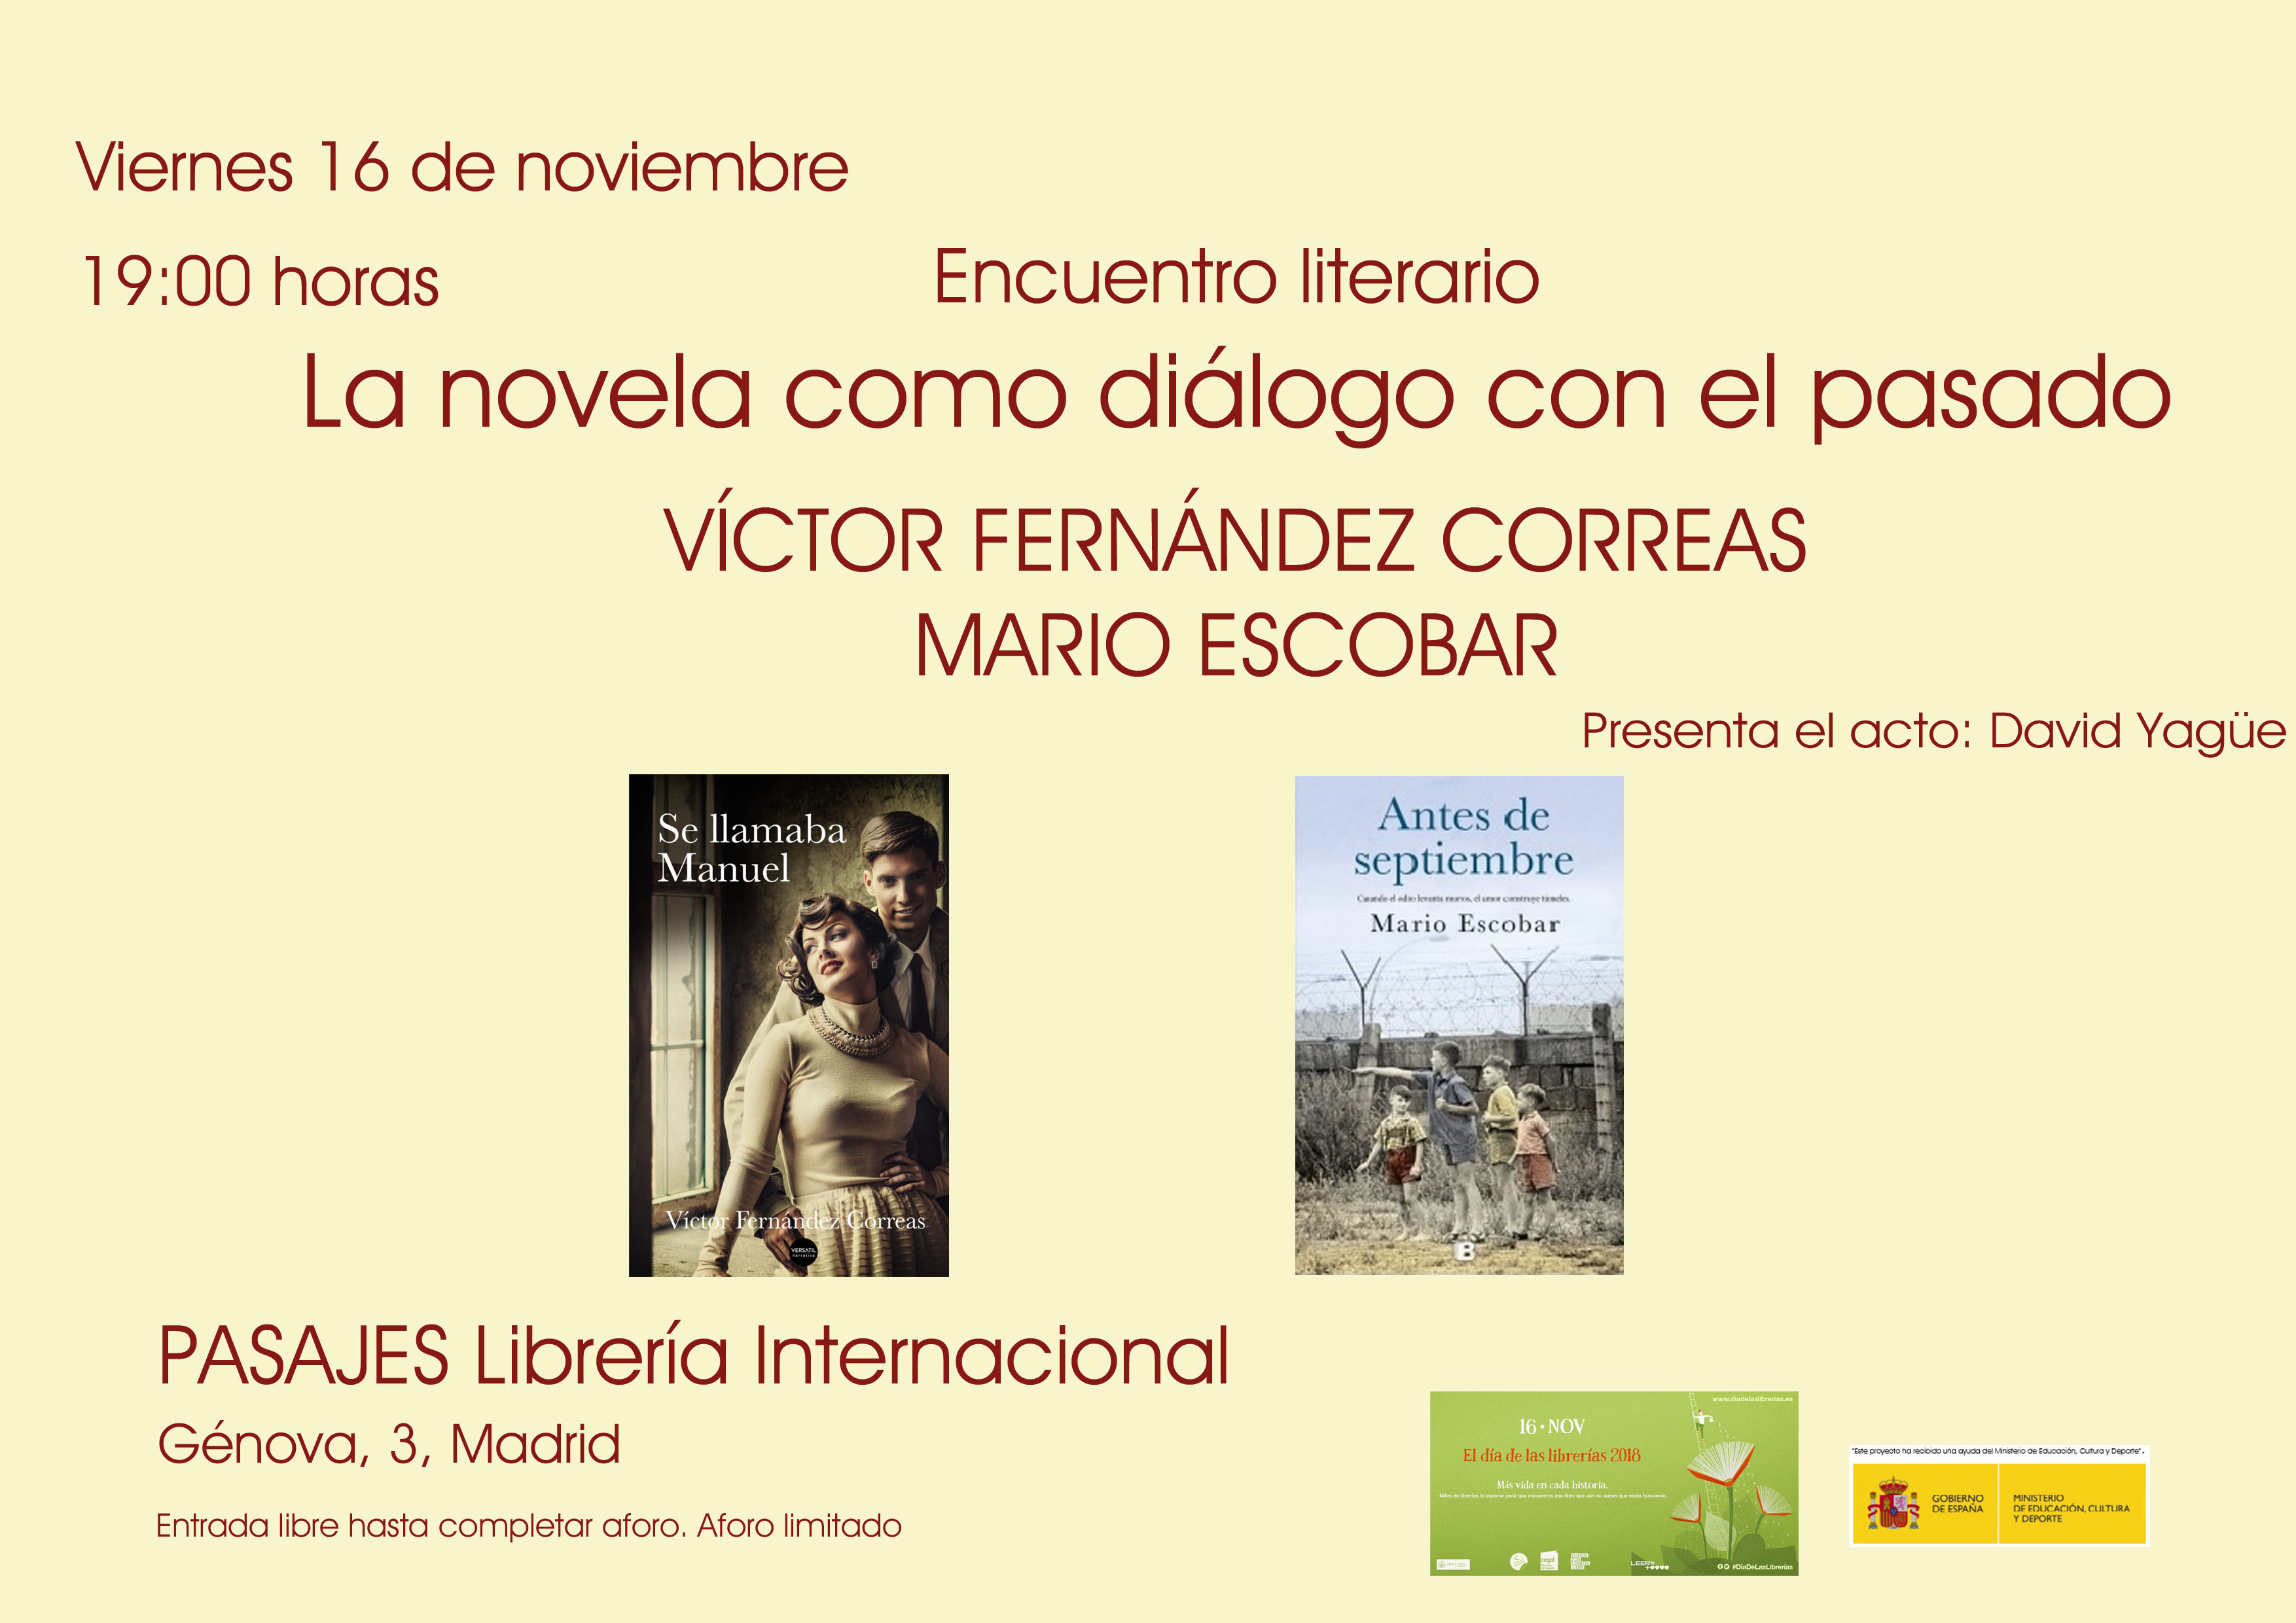 ENCUENTRO LITERARIO "La novela como diálogo con el pasado" | David Yagüe debate con Víctor Fernández Correas y Mario Escobar en torno a la Novela Histórica